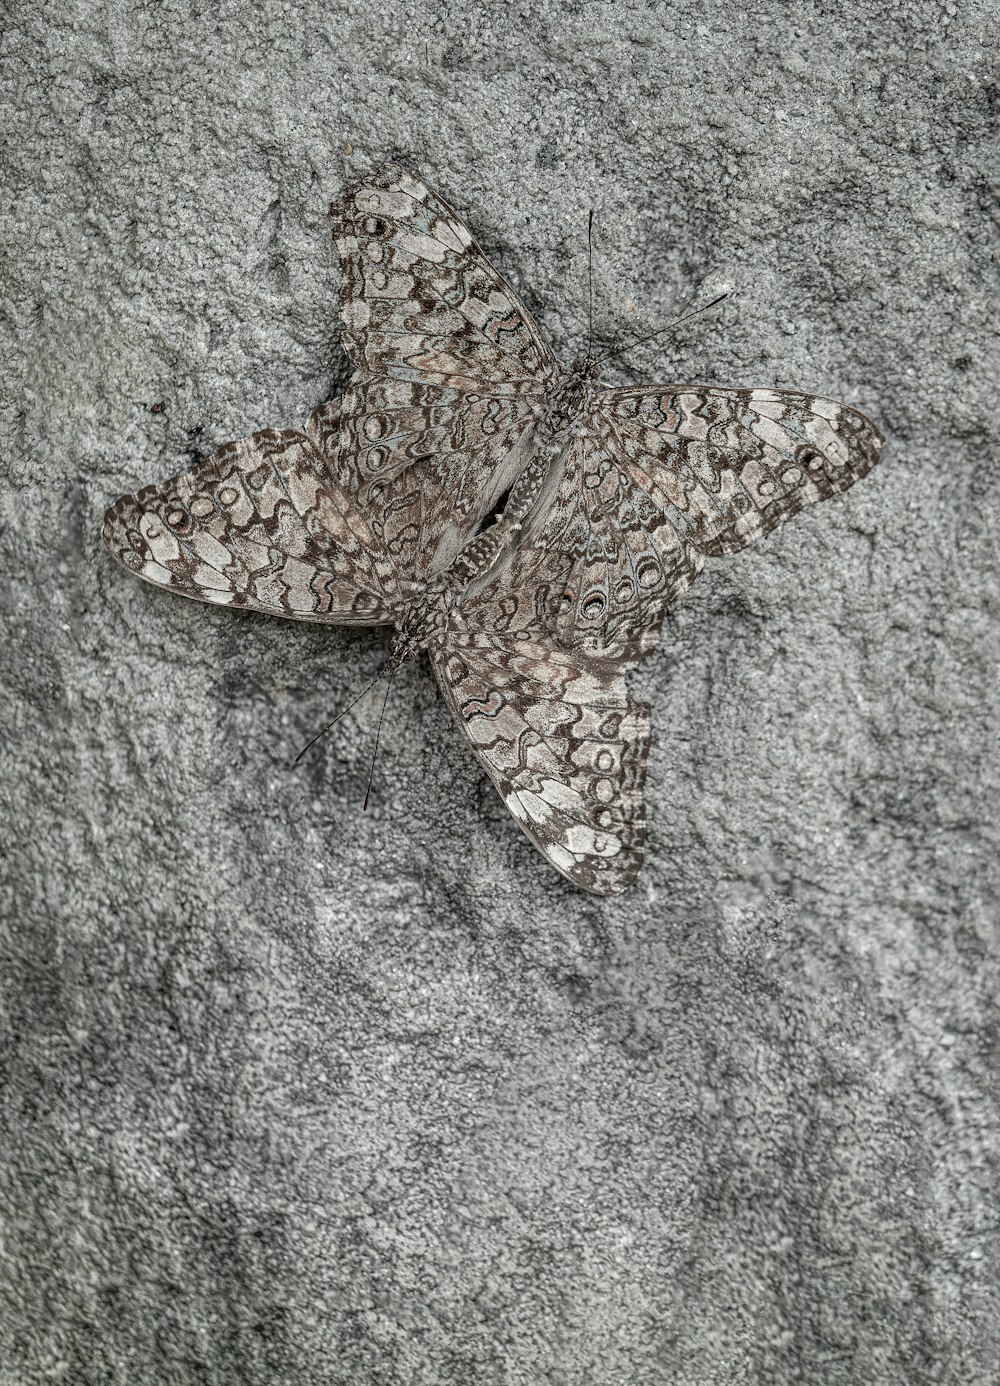 una mariposa que está sentada en una roca